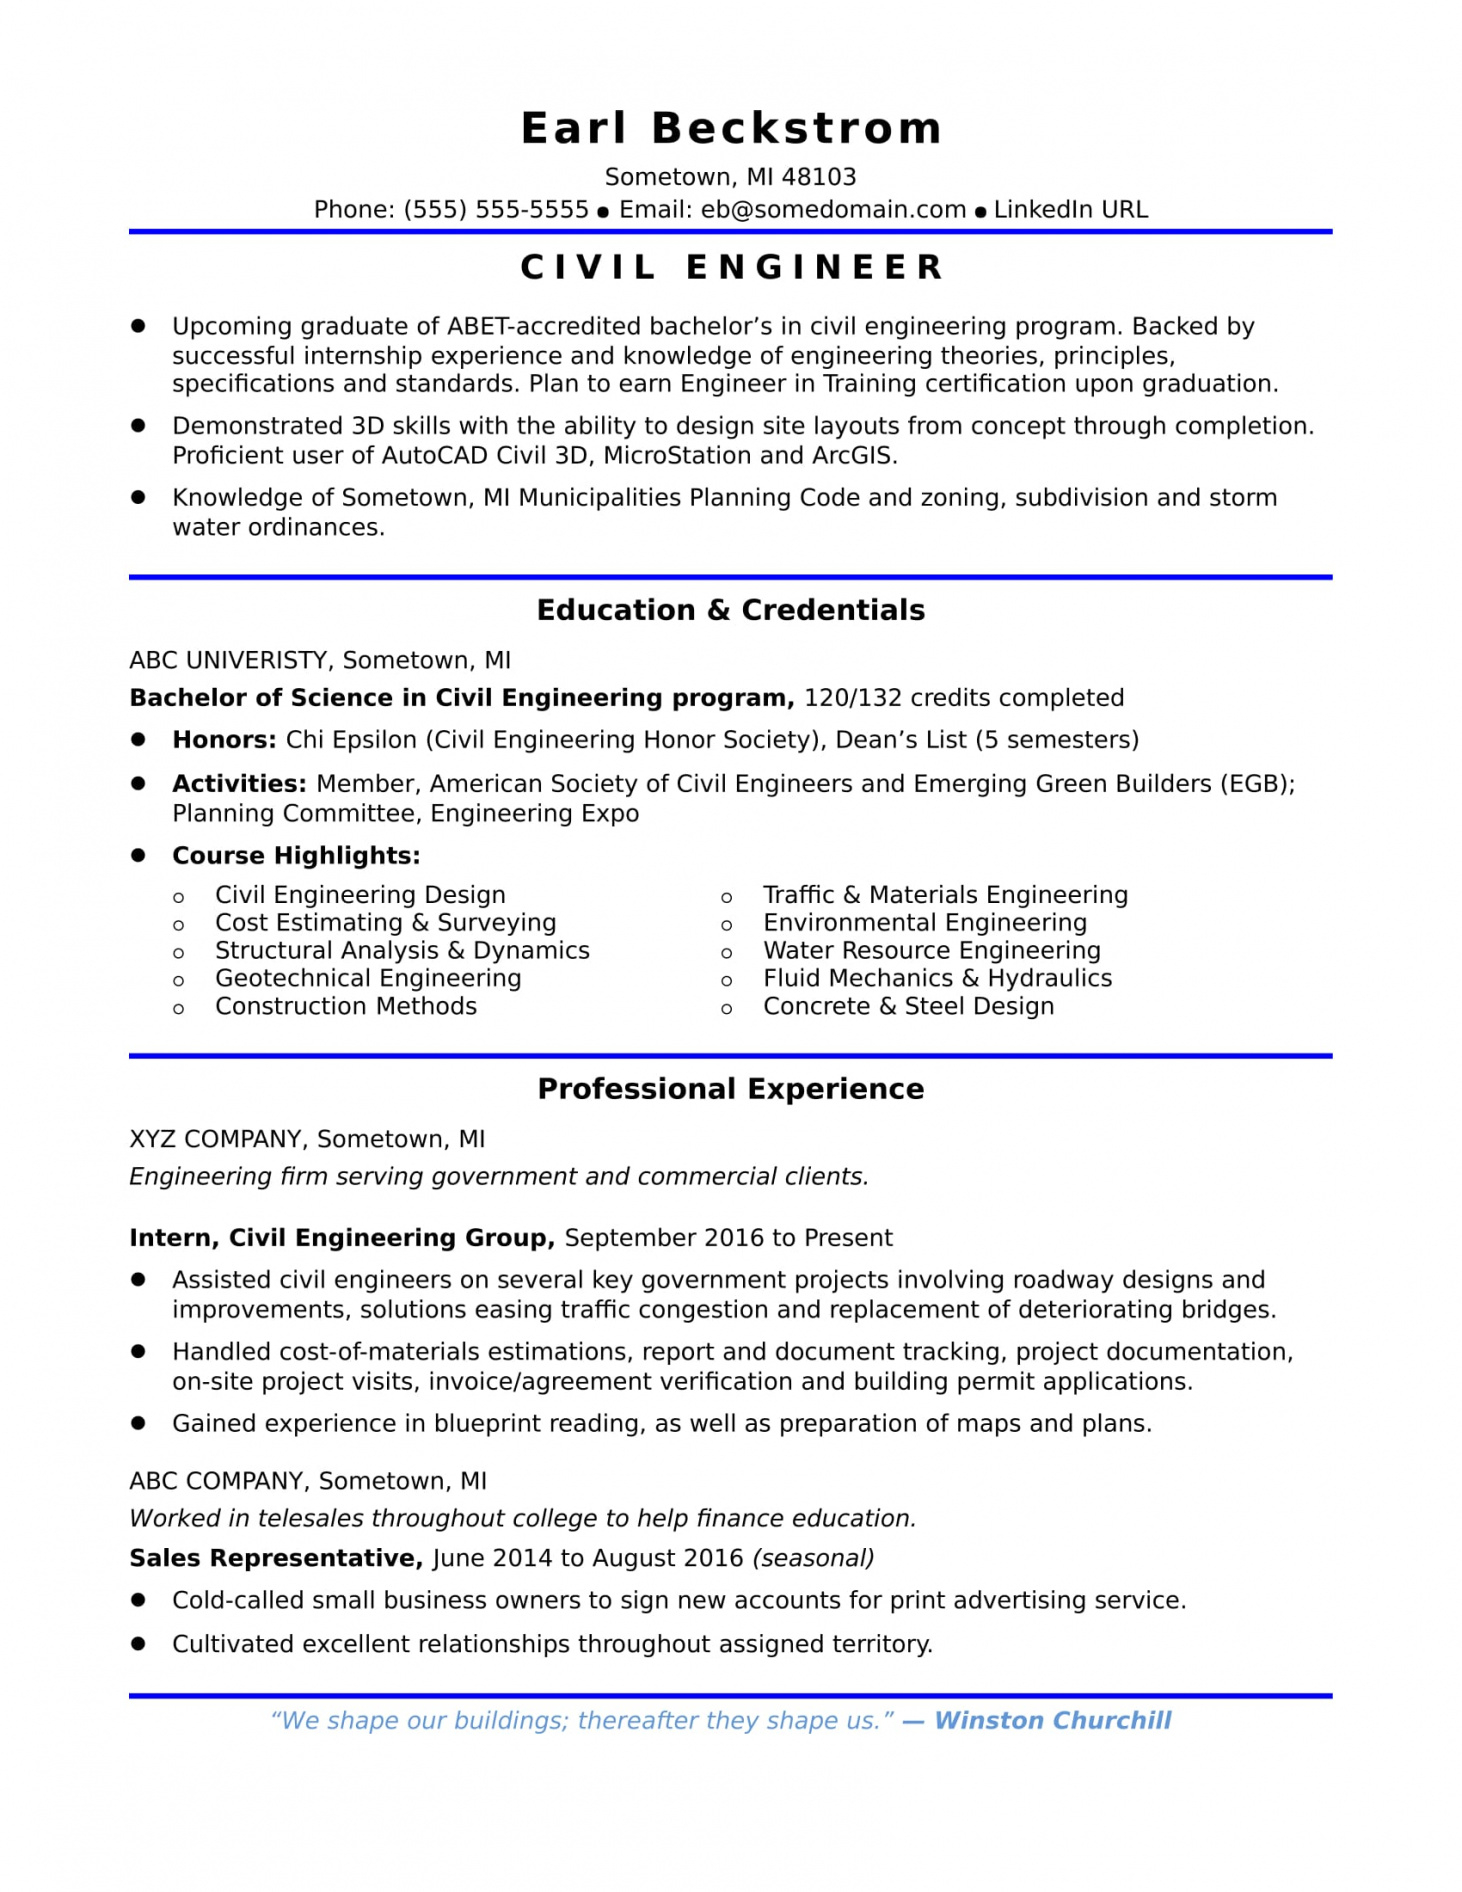 Resume Objective Example Resume Objective Example Civil Engineer Civil Engineering Resume resume objective example|wikiresume.com